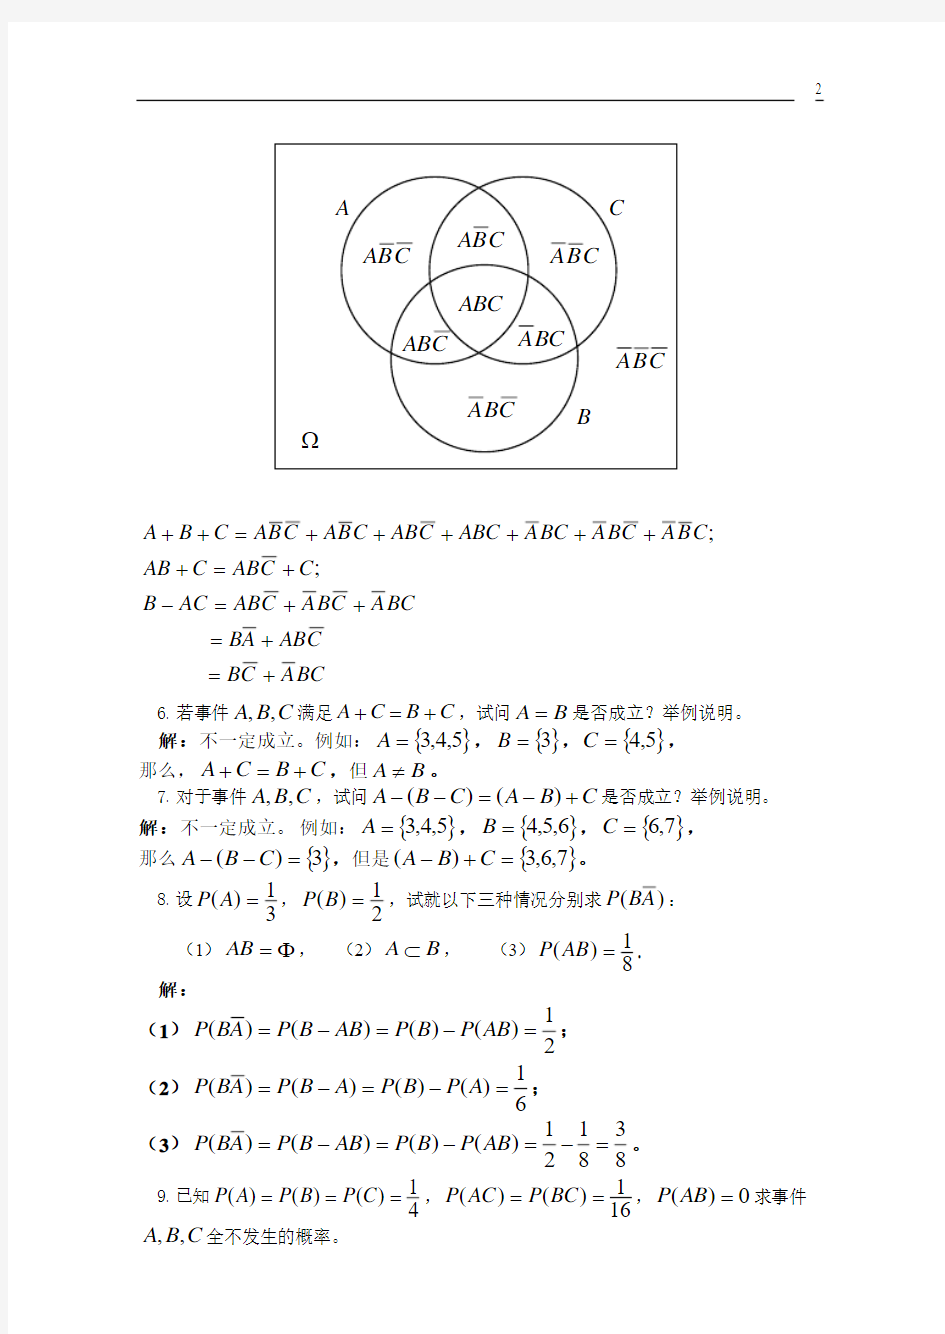 四川大学出版社《概率论与数理统计》课后习题答案chapter1